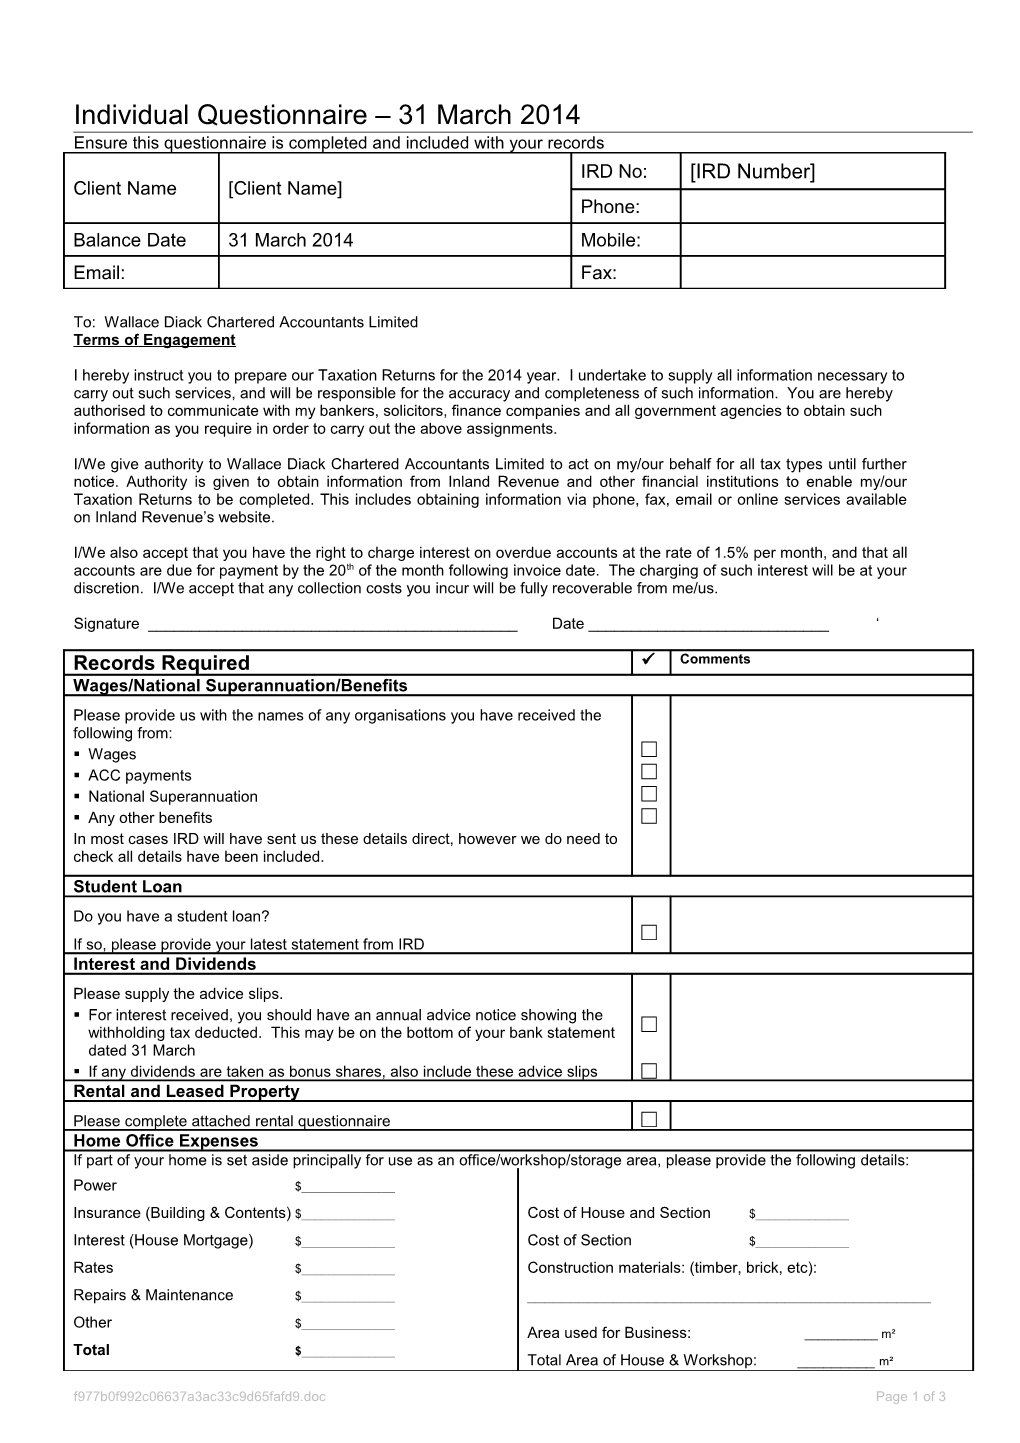 Client Questionnaire Individual s1